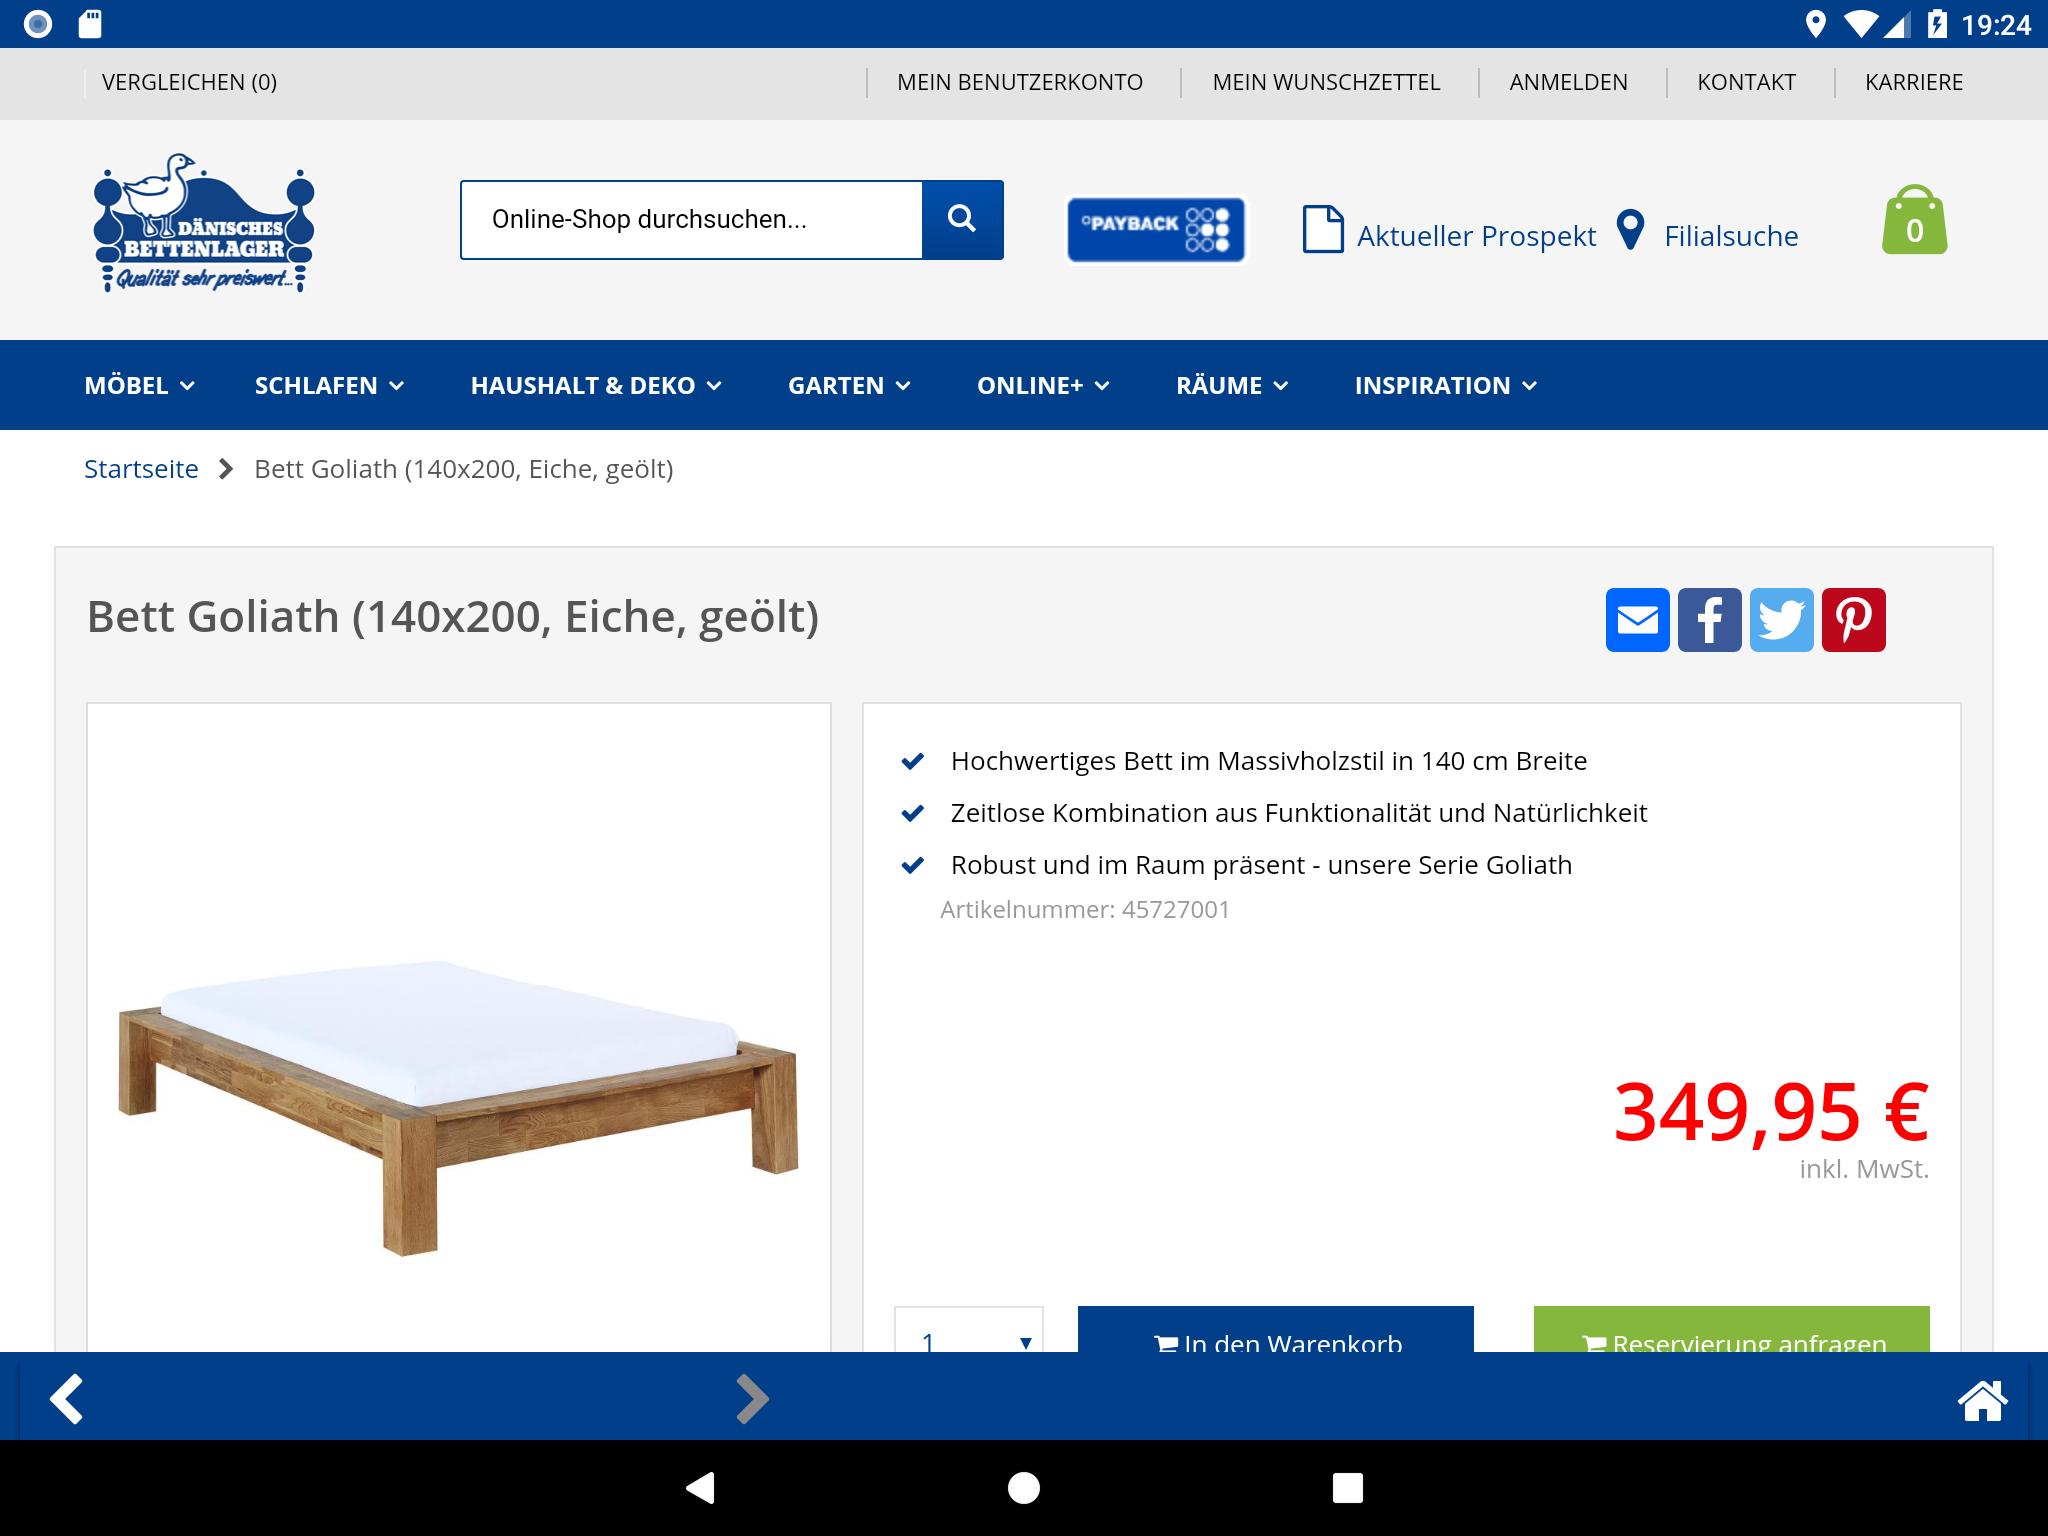 JYSK - Betten, Möbel, Wohnen for Android - APK Download